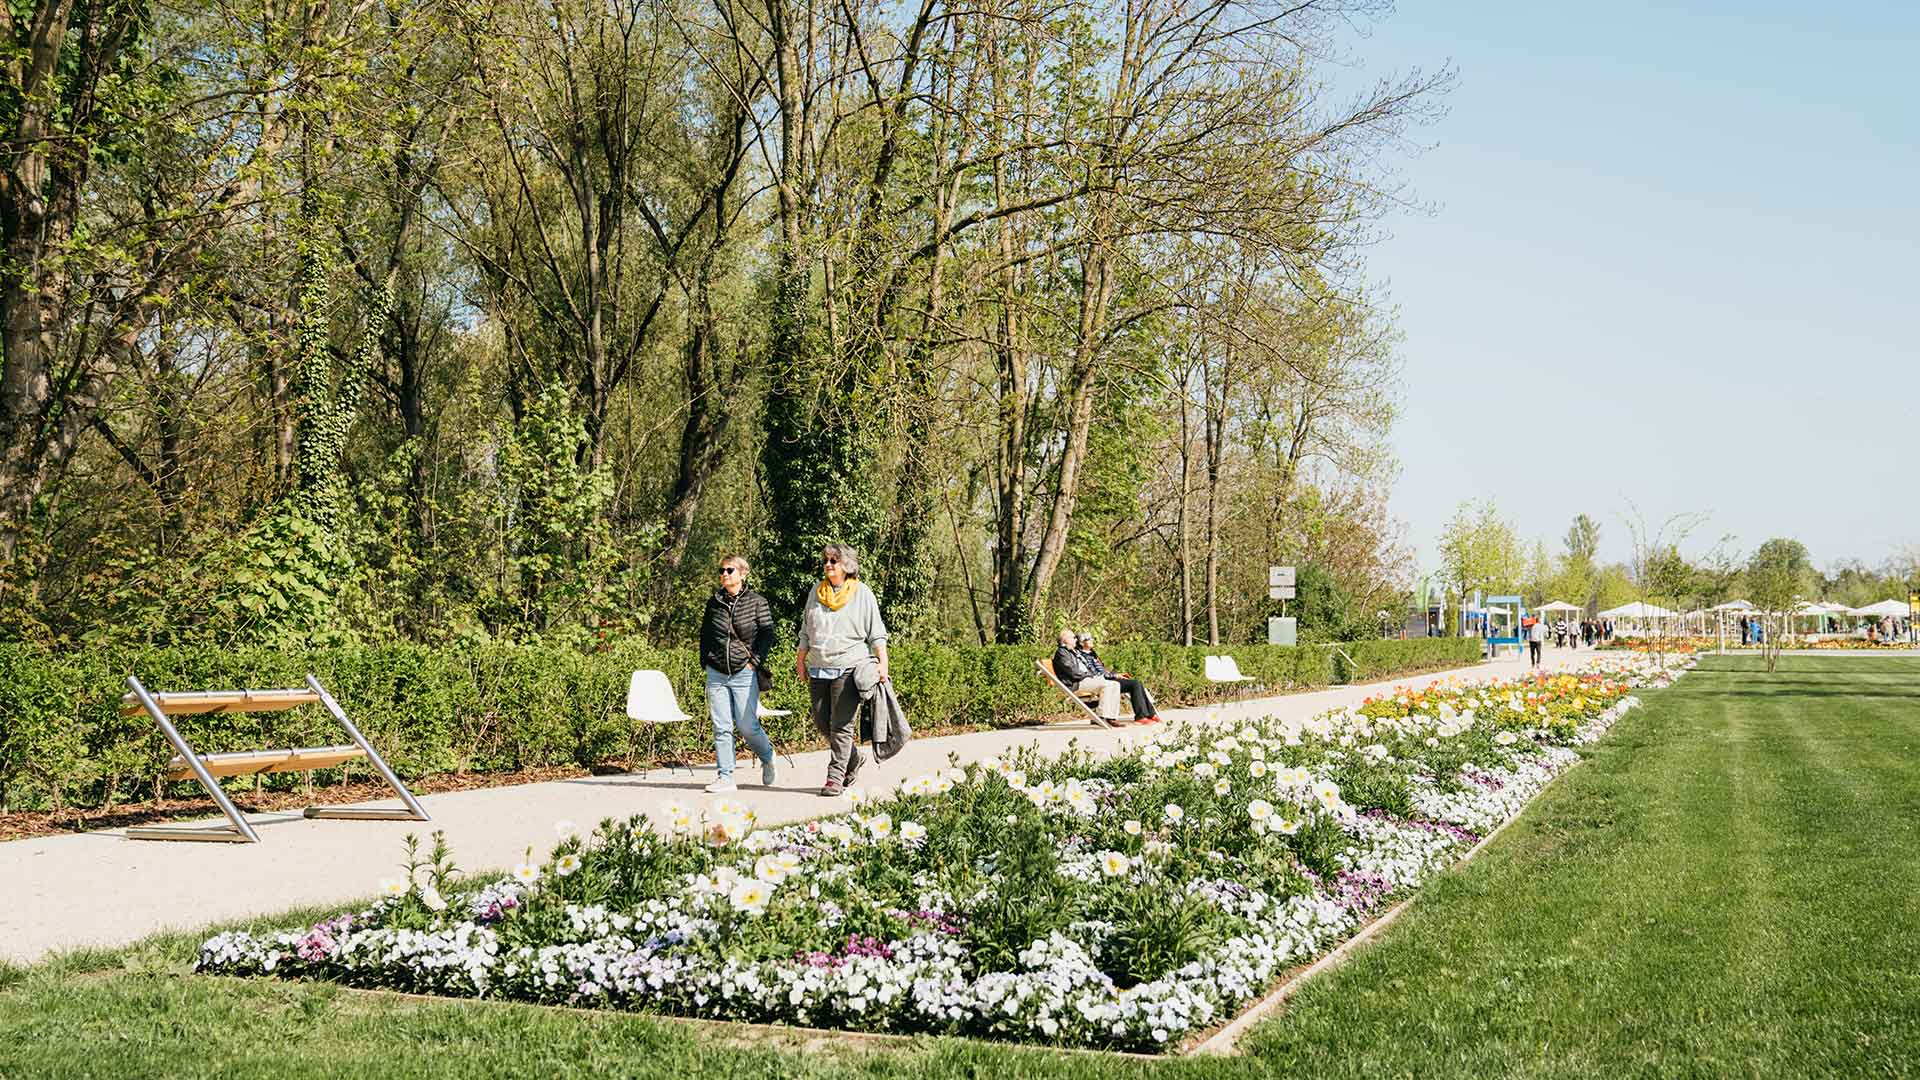 Riverhin le jardin entre voisins - Landesgartenschau arbres